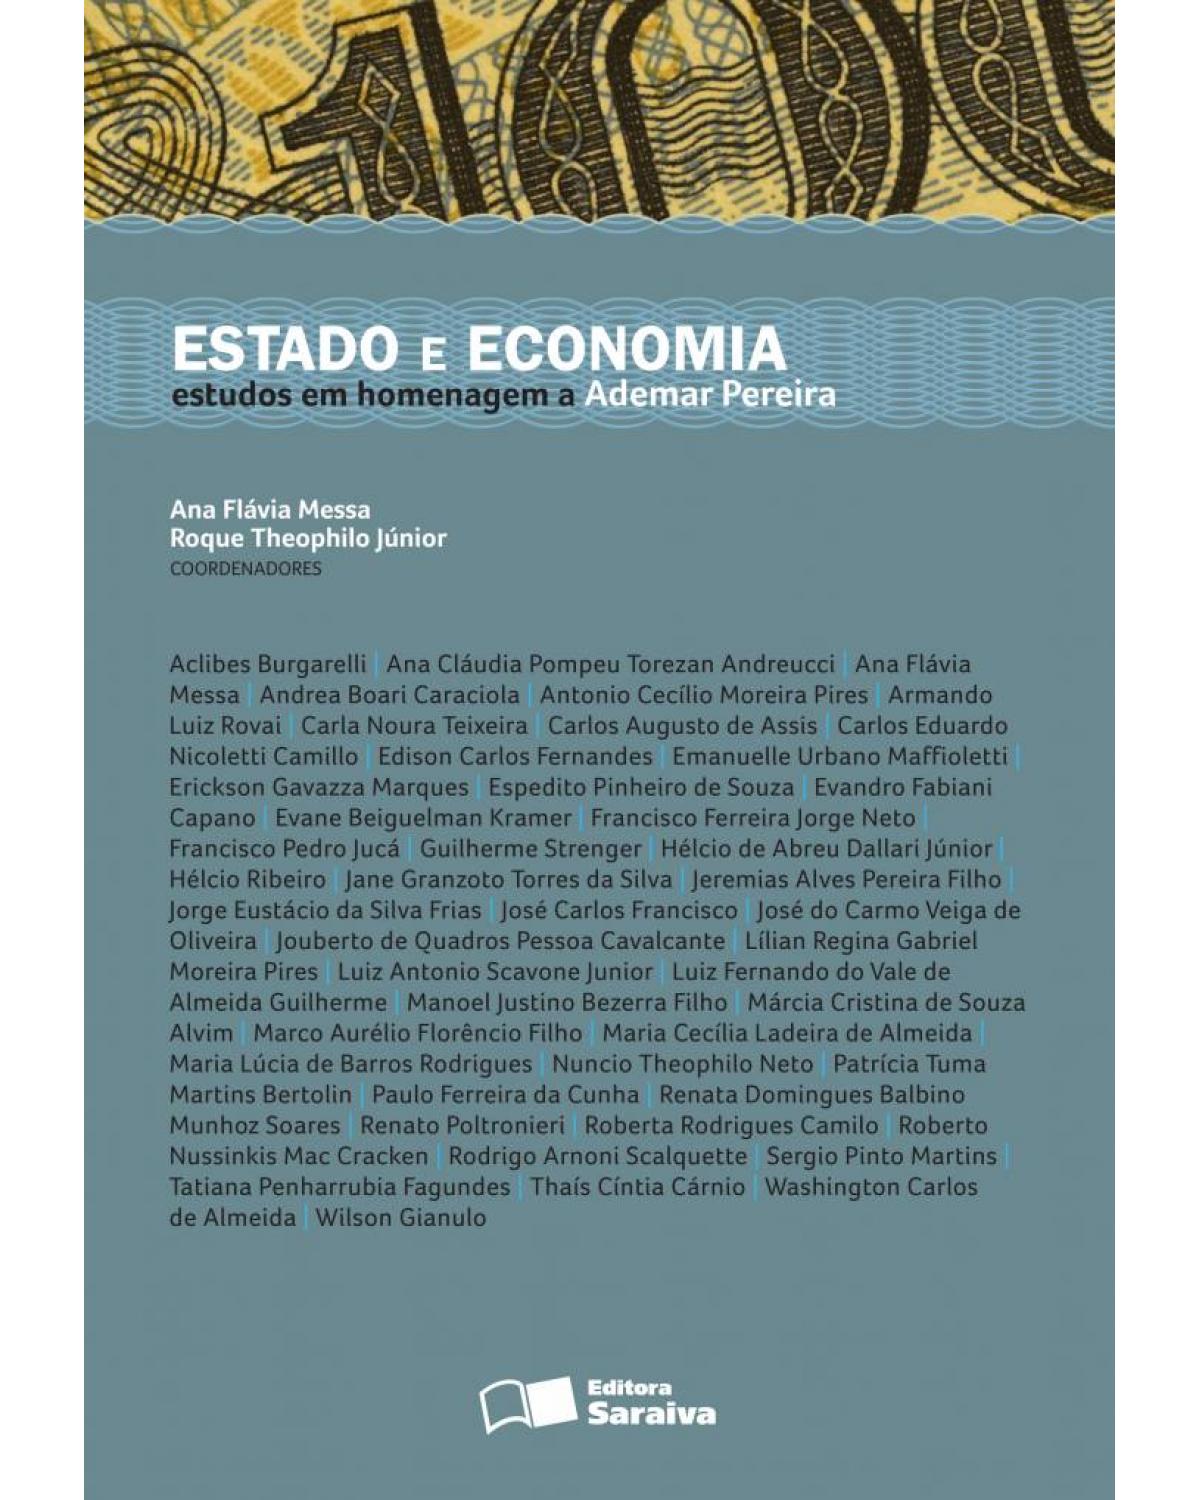 Estado e economia - estudos em homenagem a Ademar Pereira - 1ª Edição | 2011